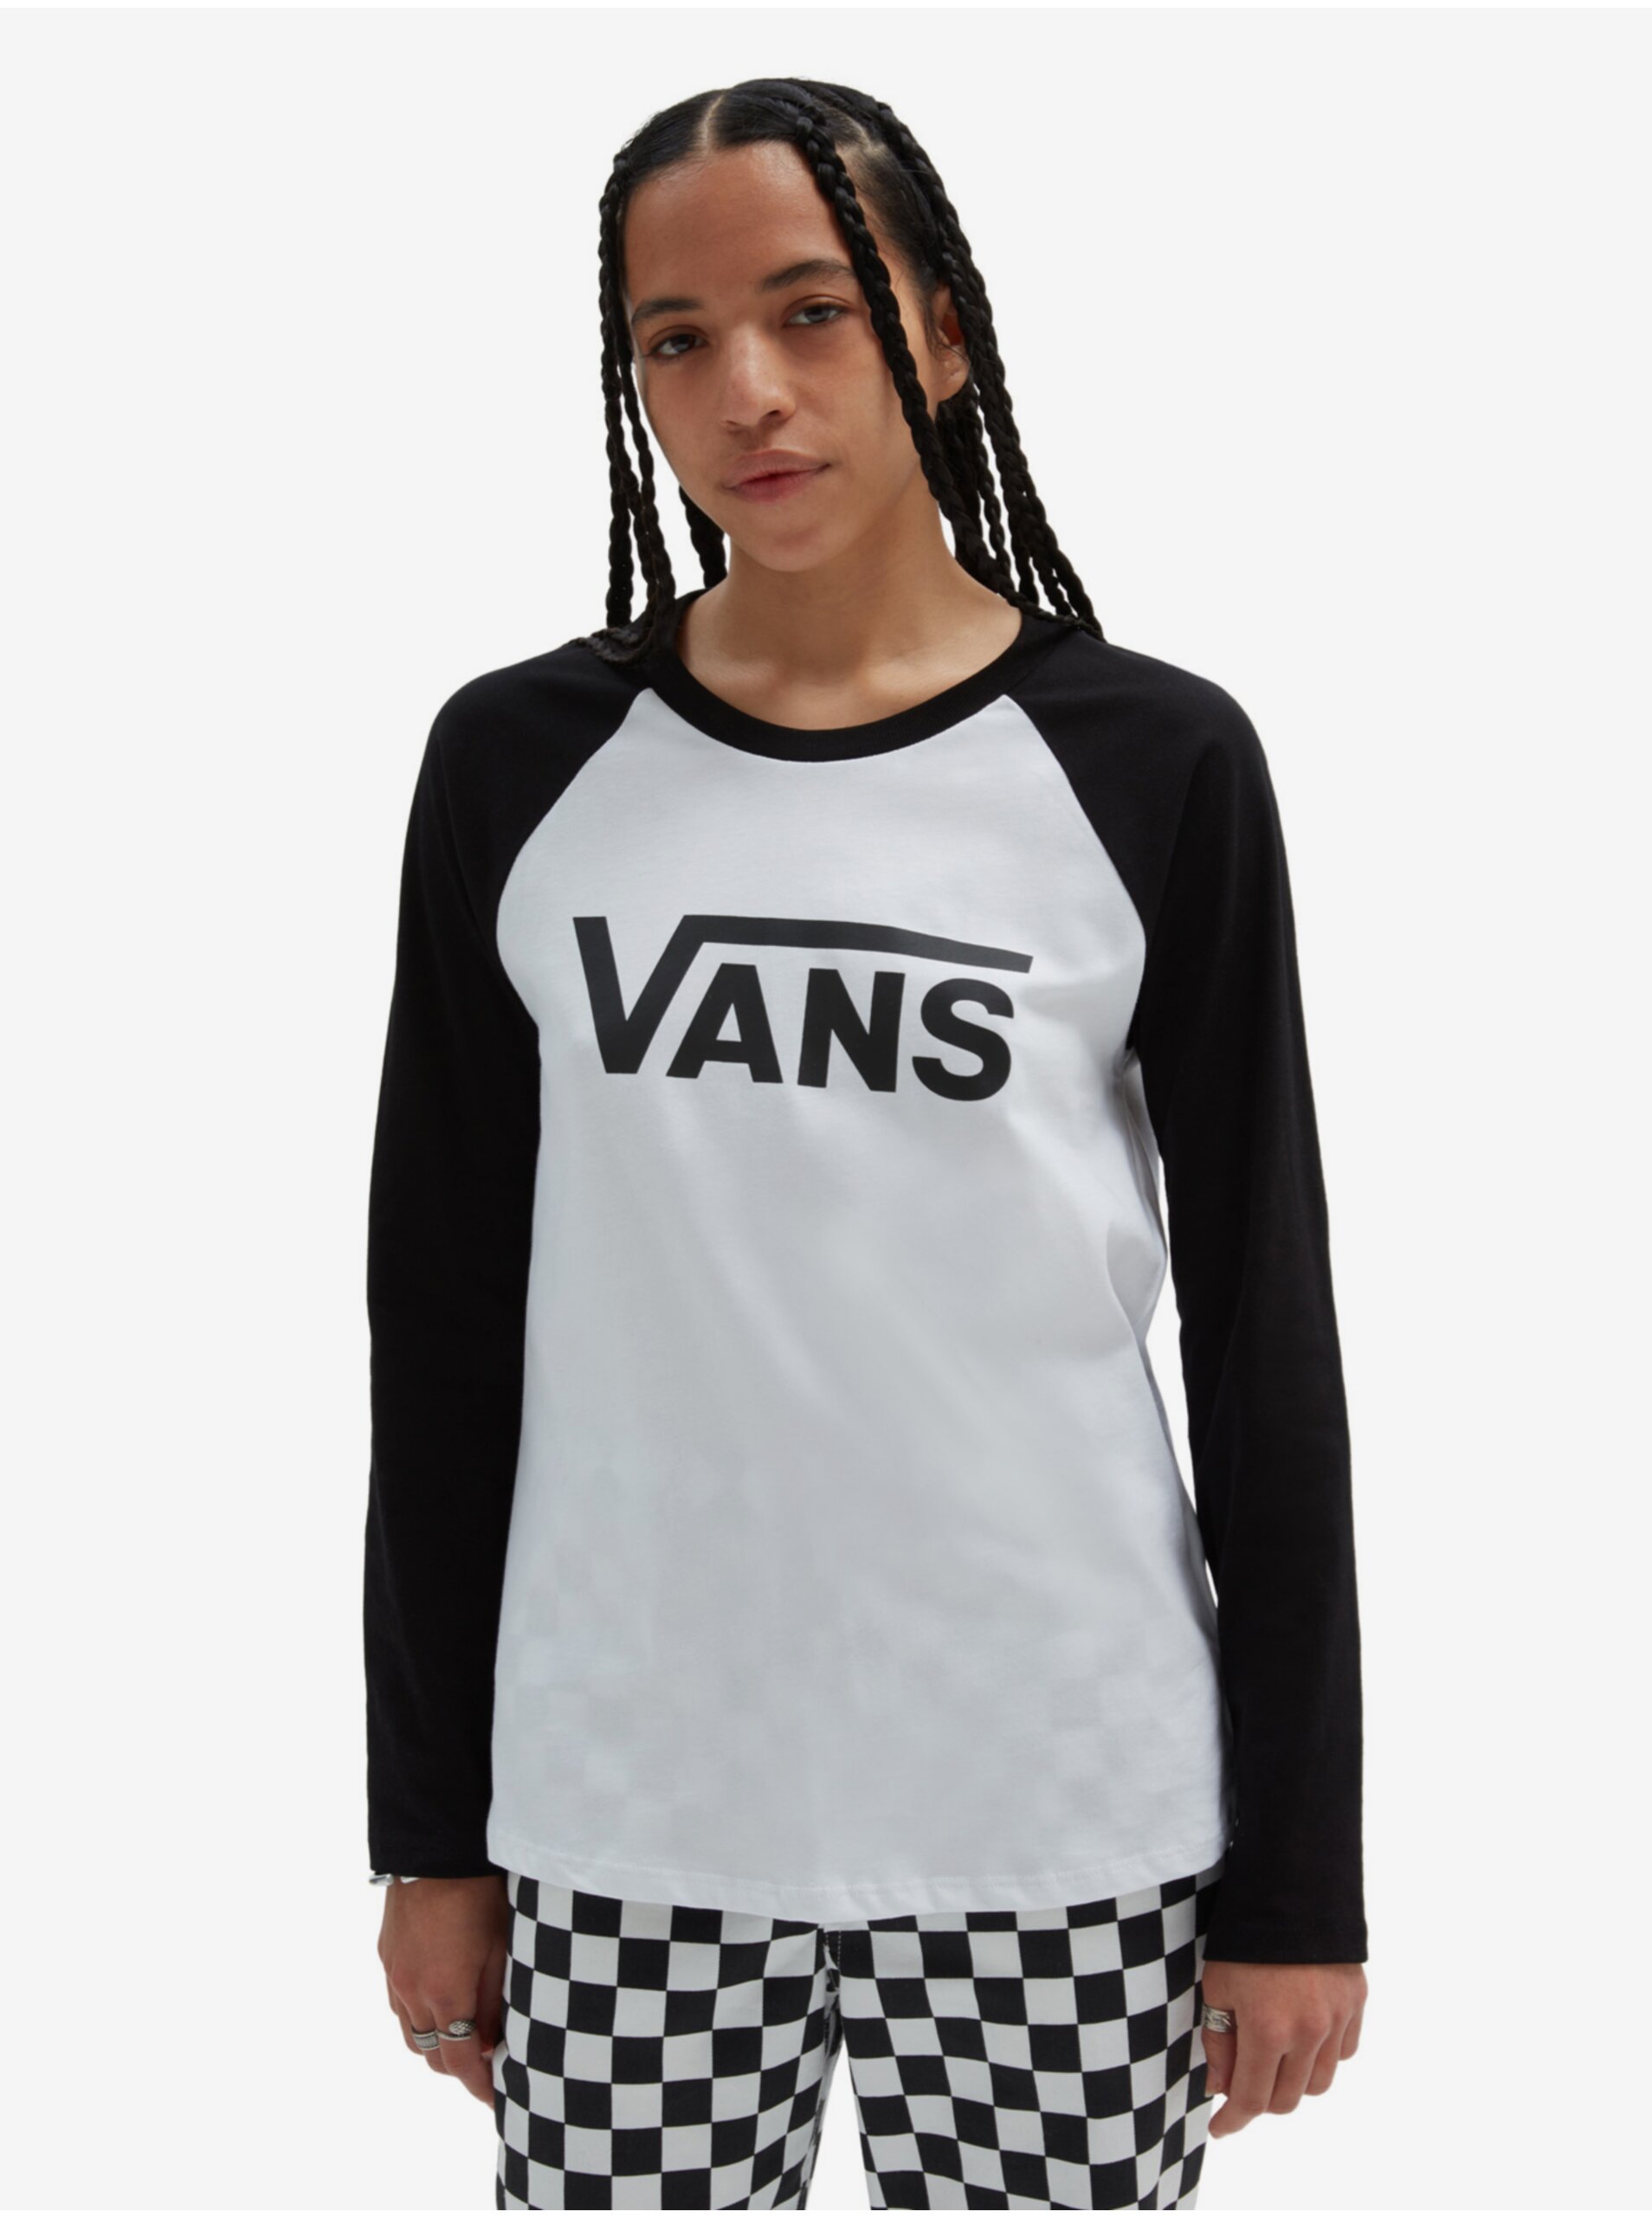 E-shop Černo-bílé dámské tričko s dlouhým rukávem VANS Flying